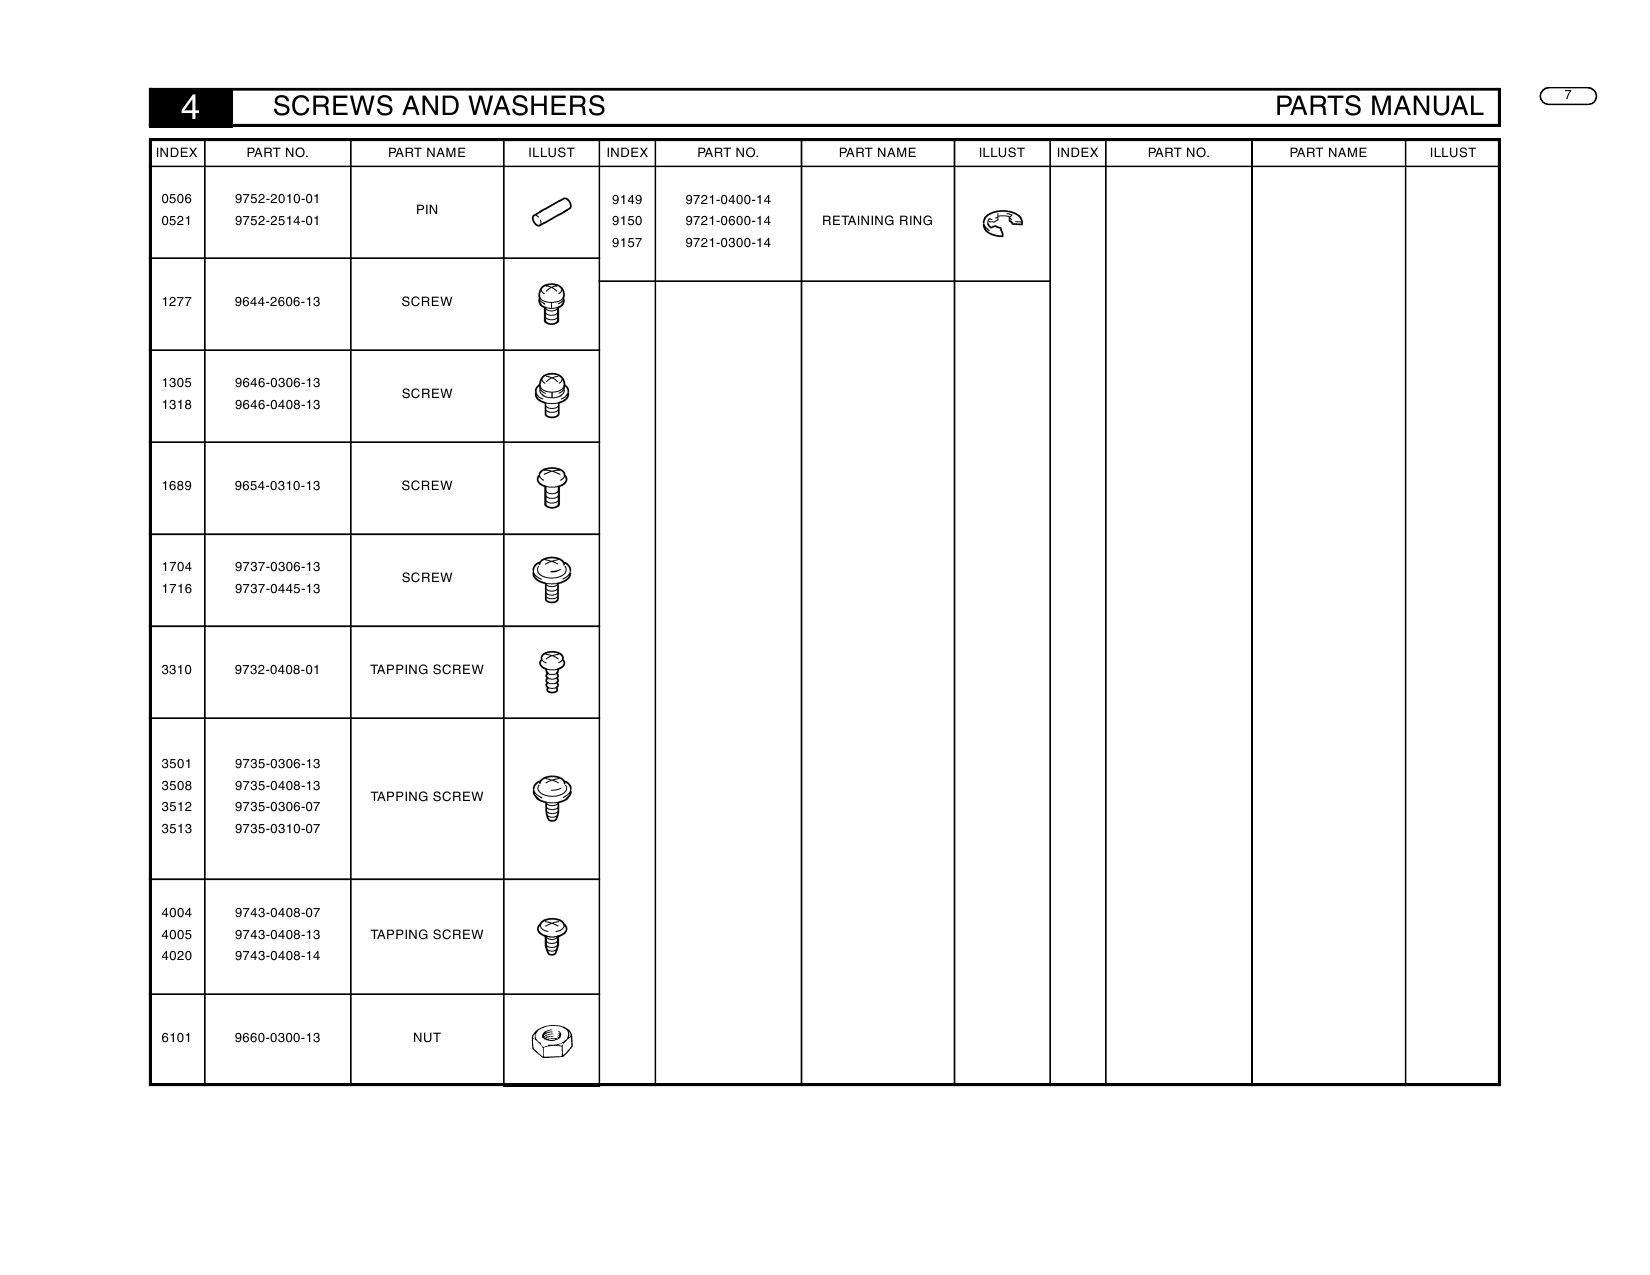 Konica-Minolta Options C-101 Parts Manual-6